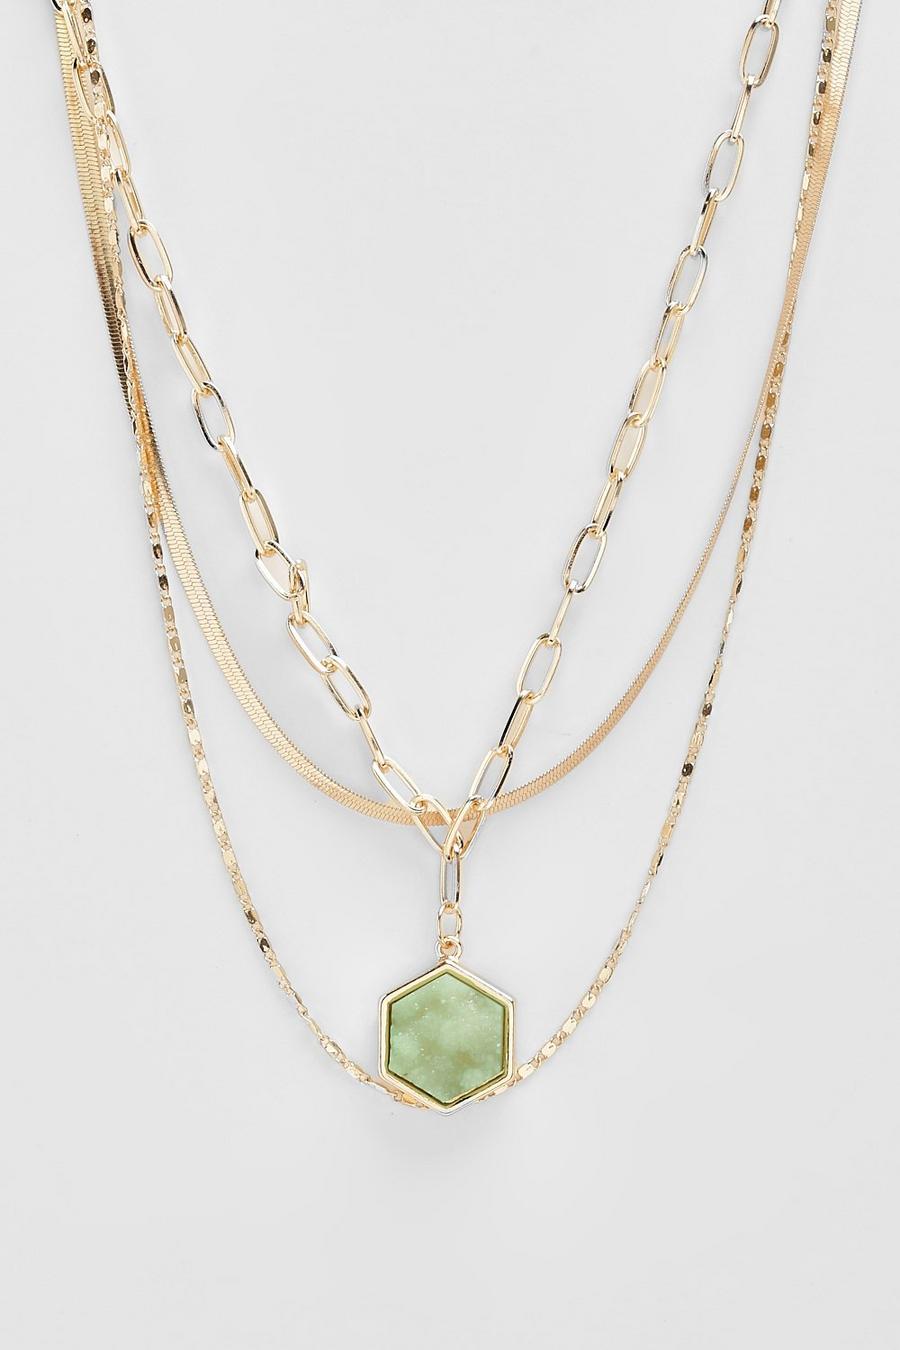 Halskette mit grünem Stein, Gold